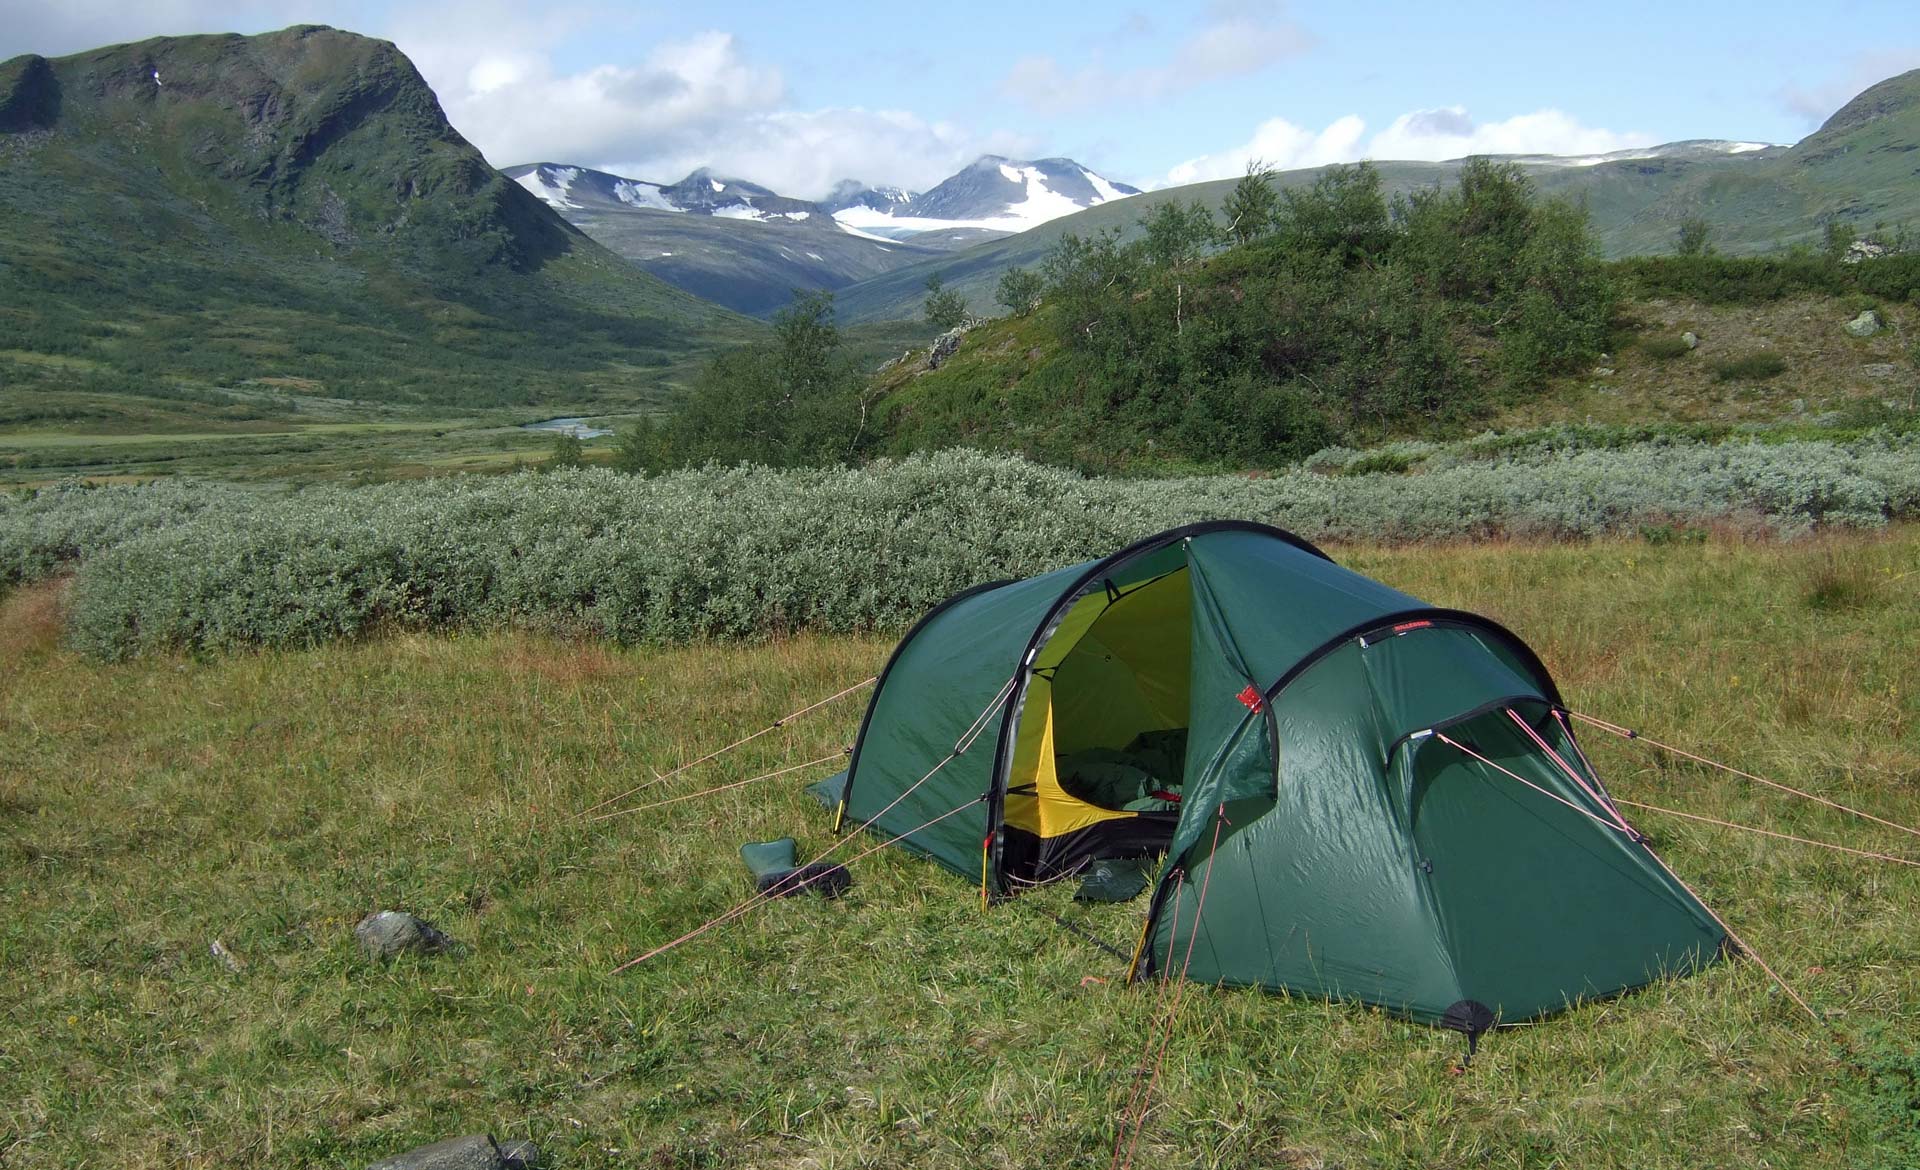 Vårt nuvarande tält Nallo, med större absid, väger ca 2,6 kg. Njåtjosvagge 2009